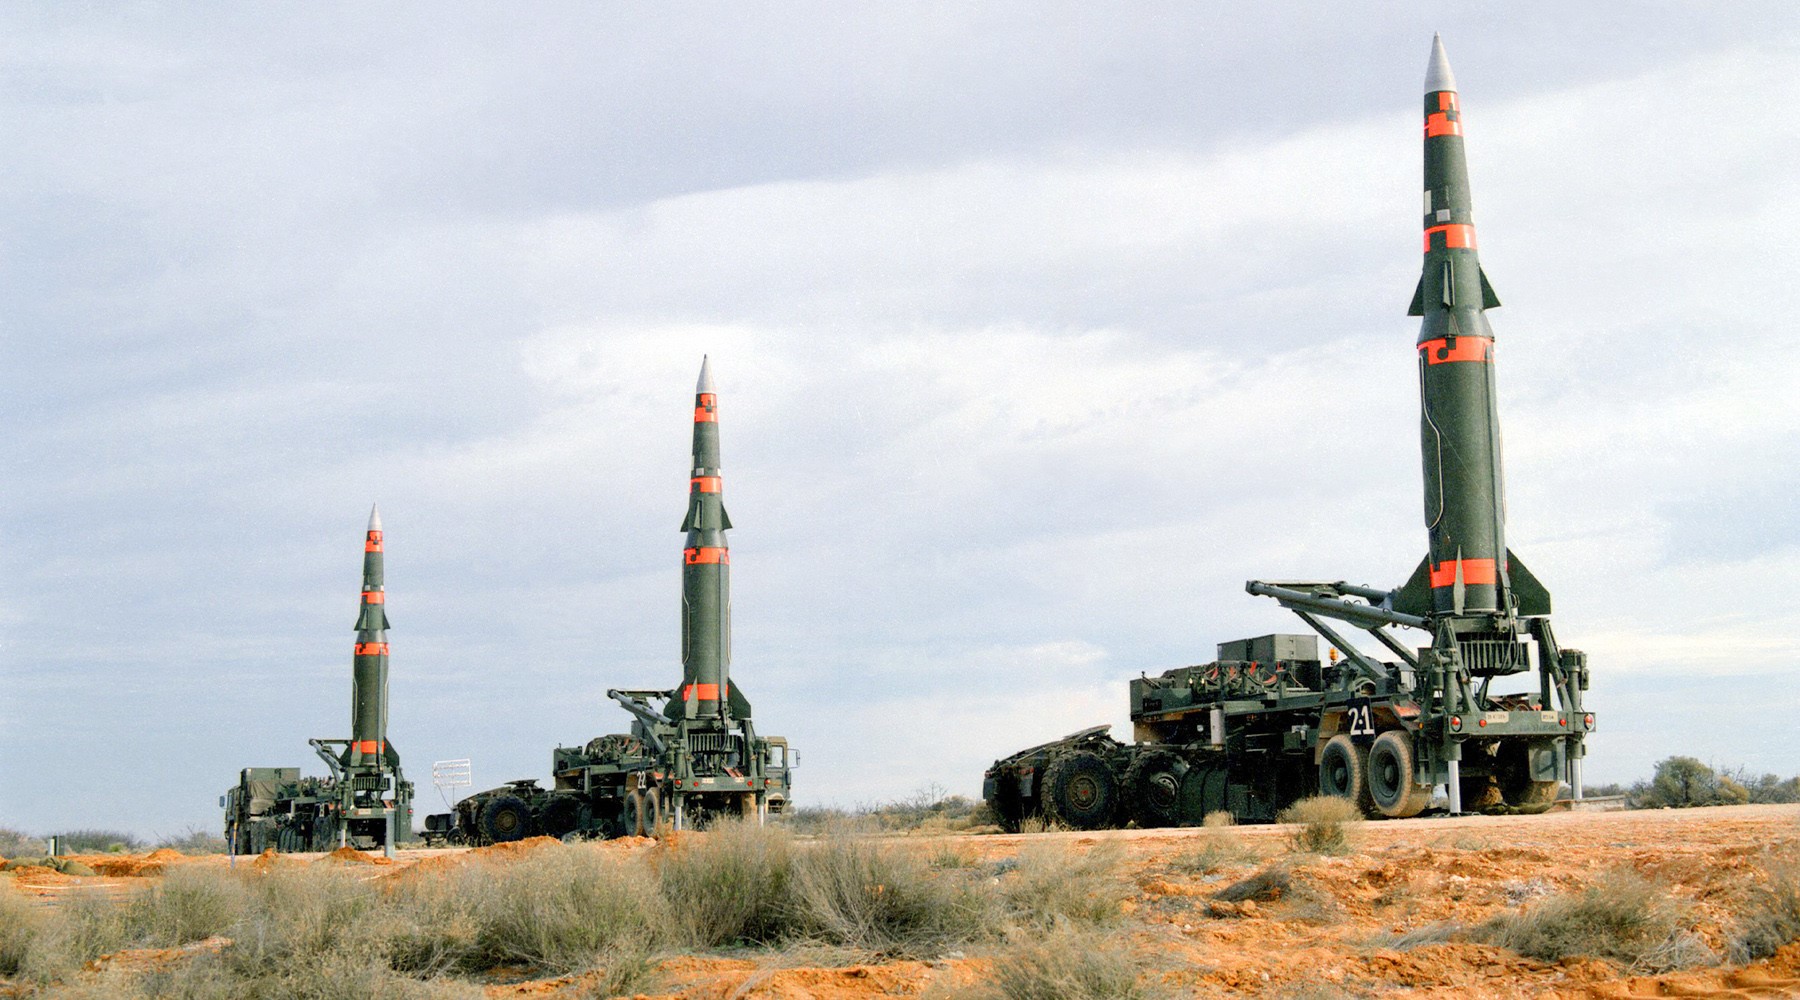 Ракеты «Першинг-2» с ядерными боеголовками, размещенные американцами в Европе в начале 80-х годов ХХ века